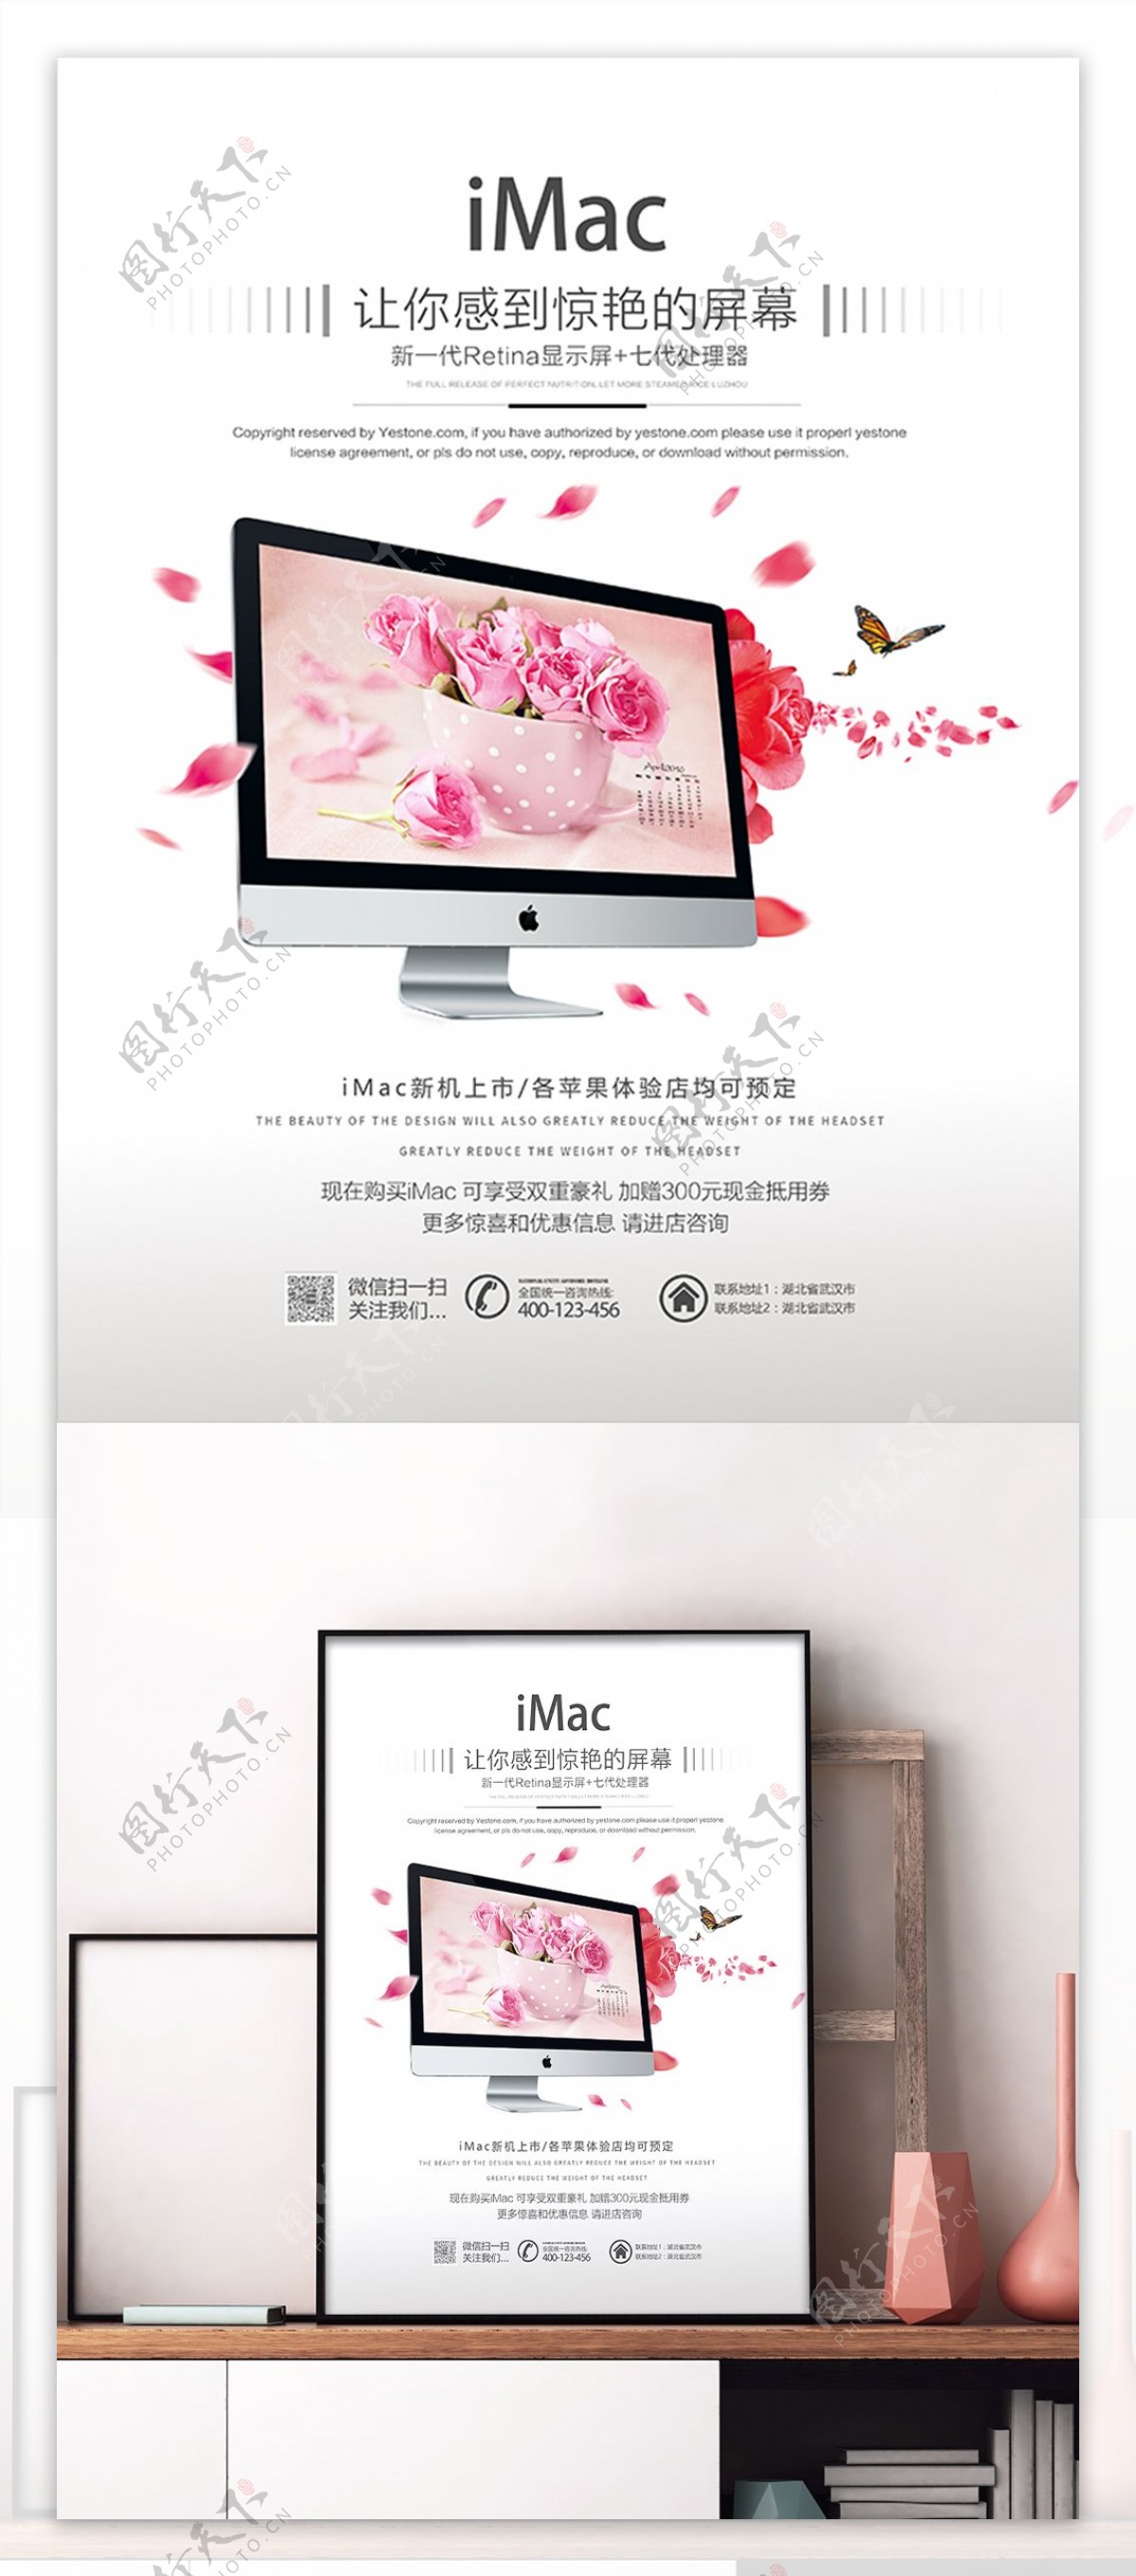 清新唯美iMac苹果台式机促销宣传海报